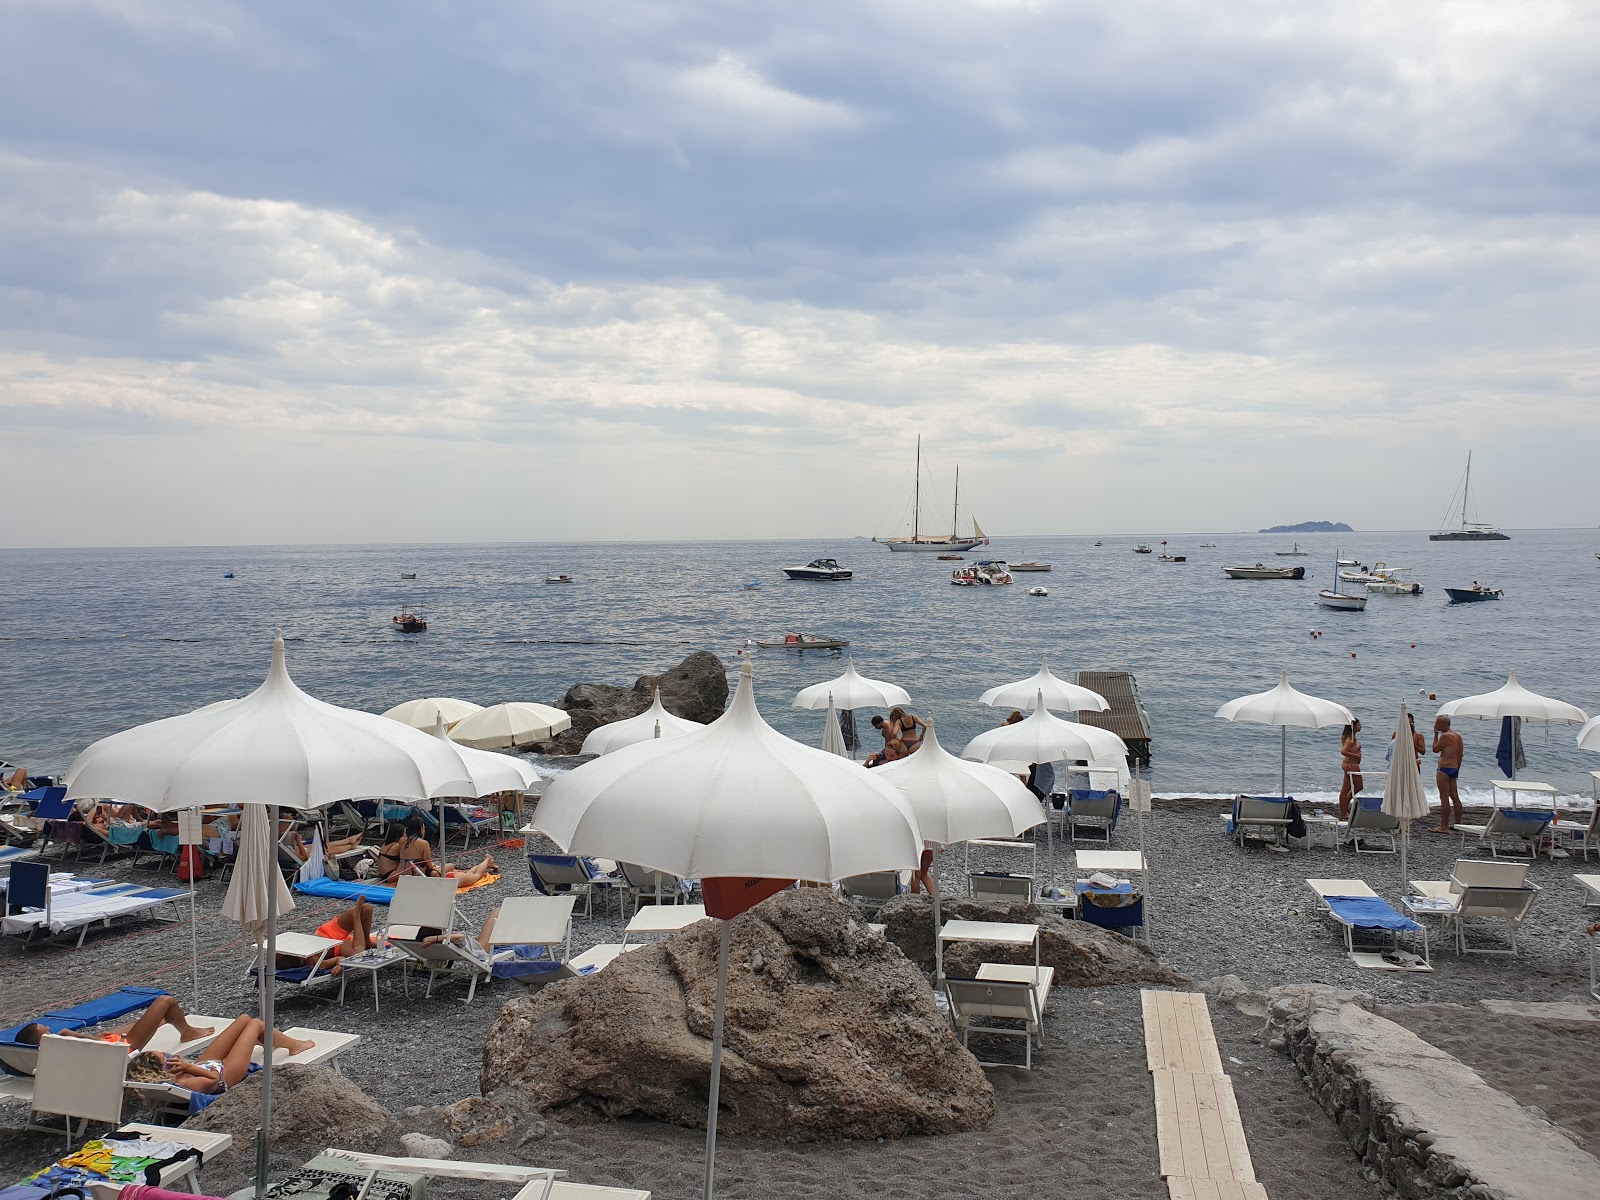 Foto de Spiaggia di via Laurito localizado em área natural